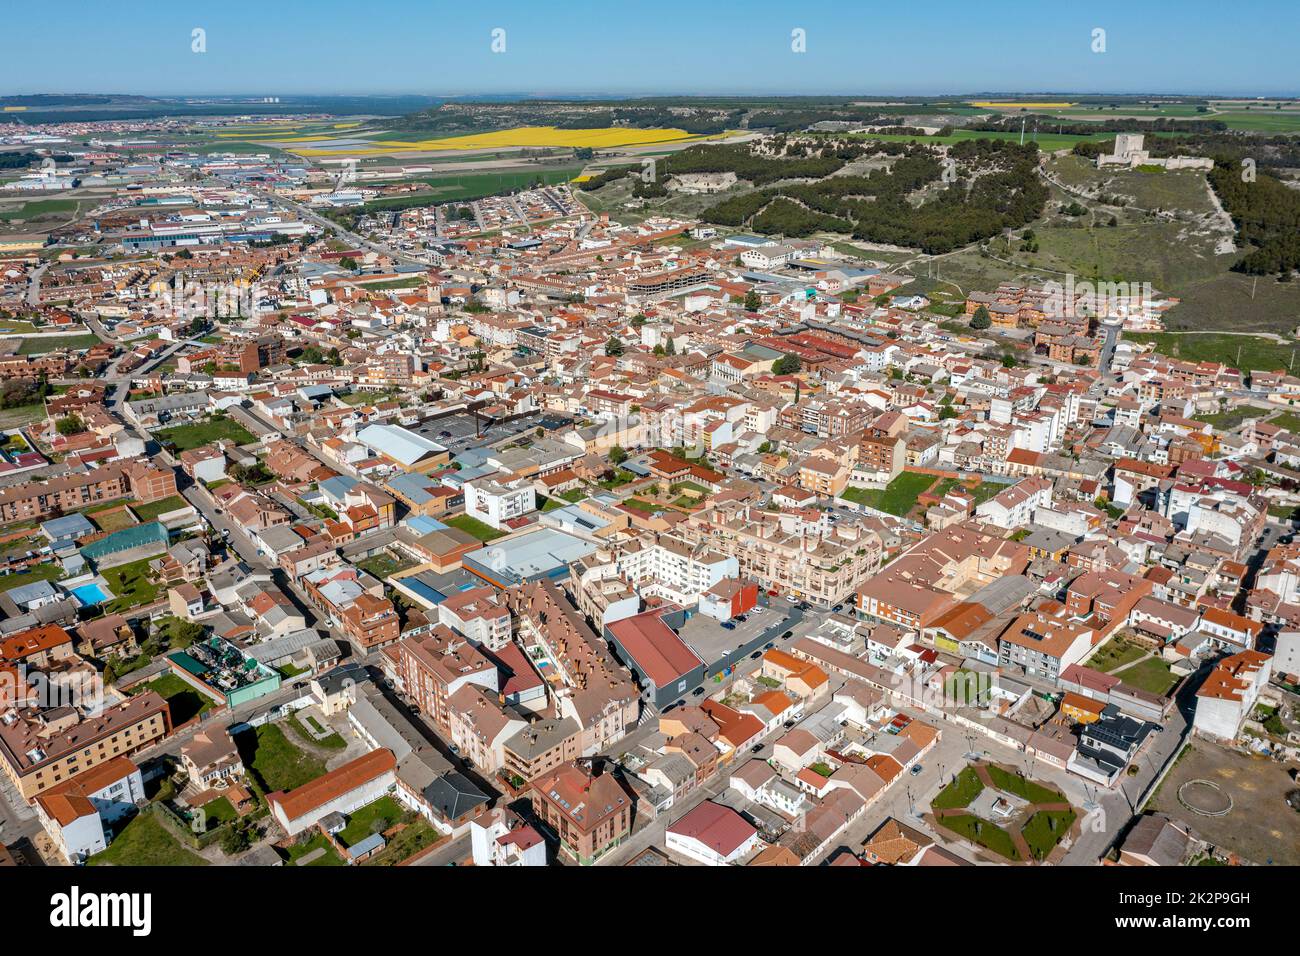 Vue générale d'Iscar, province de Valladolid, communauté autonome de Castilla y Leon, Espagne. Banque D'Images